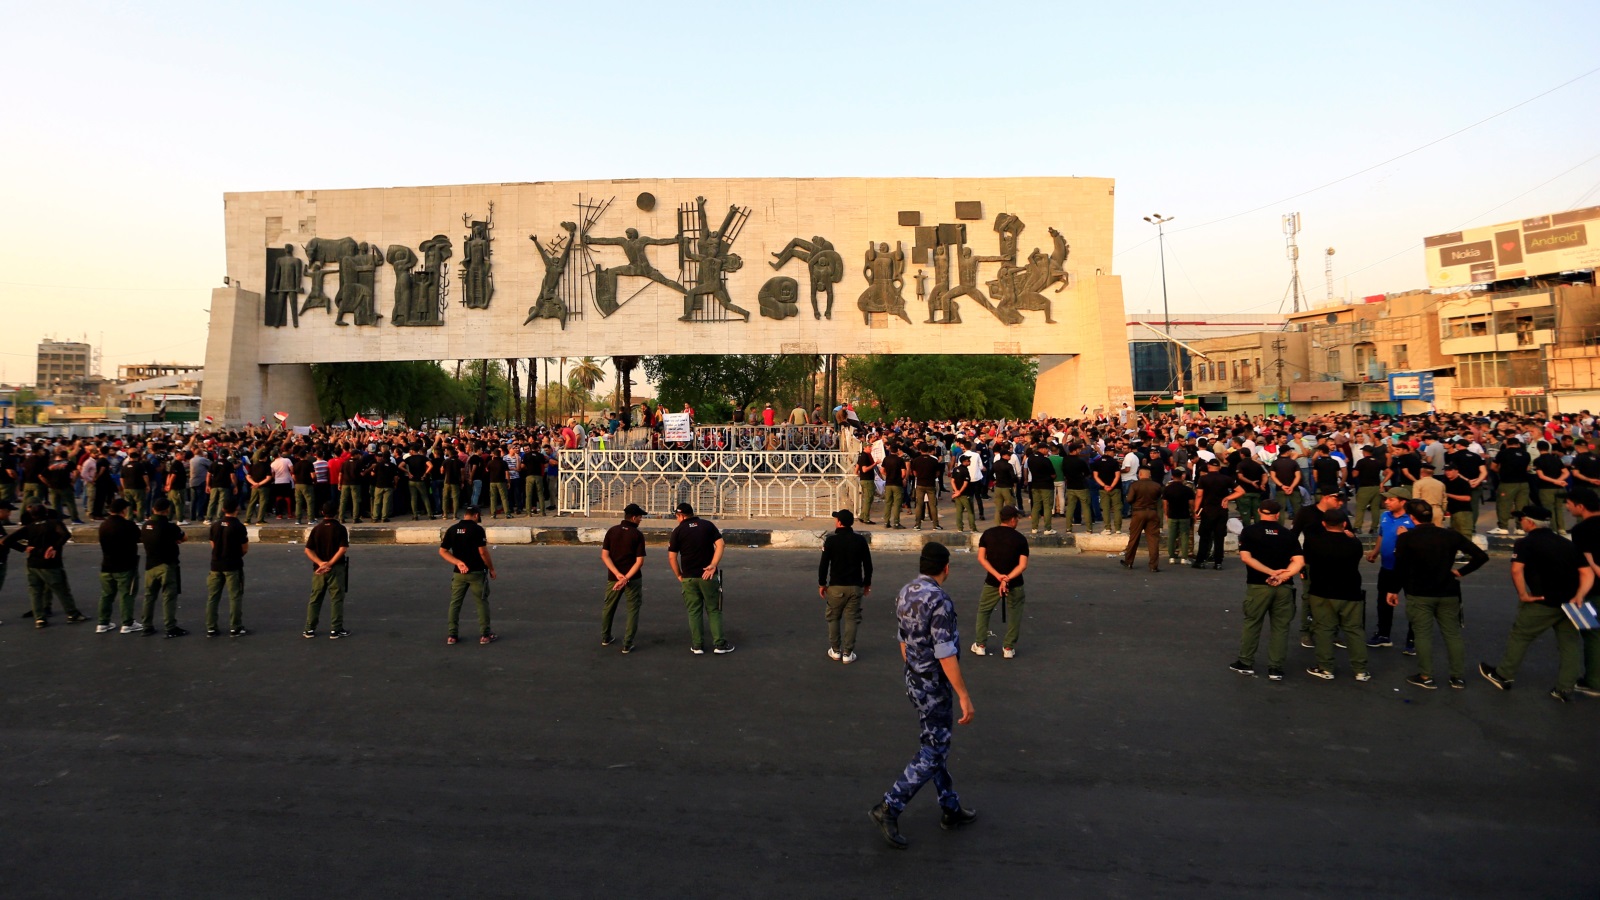 ‪انتشار أمني واسع في ساحة التحرير وسط بغداد‬ انتشار أمني واسع في ساحة التحرير وسط بغداد (رويترز)